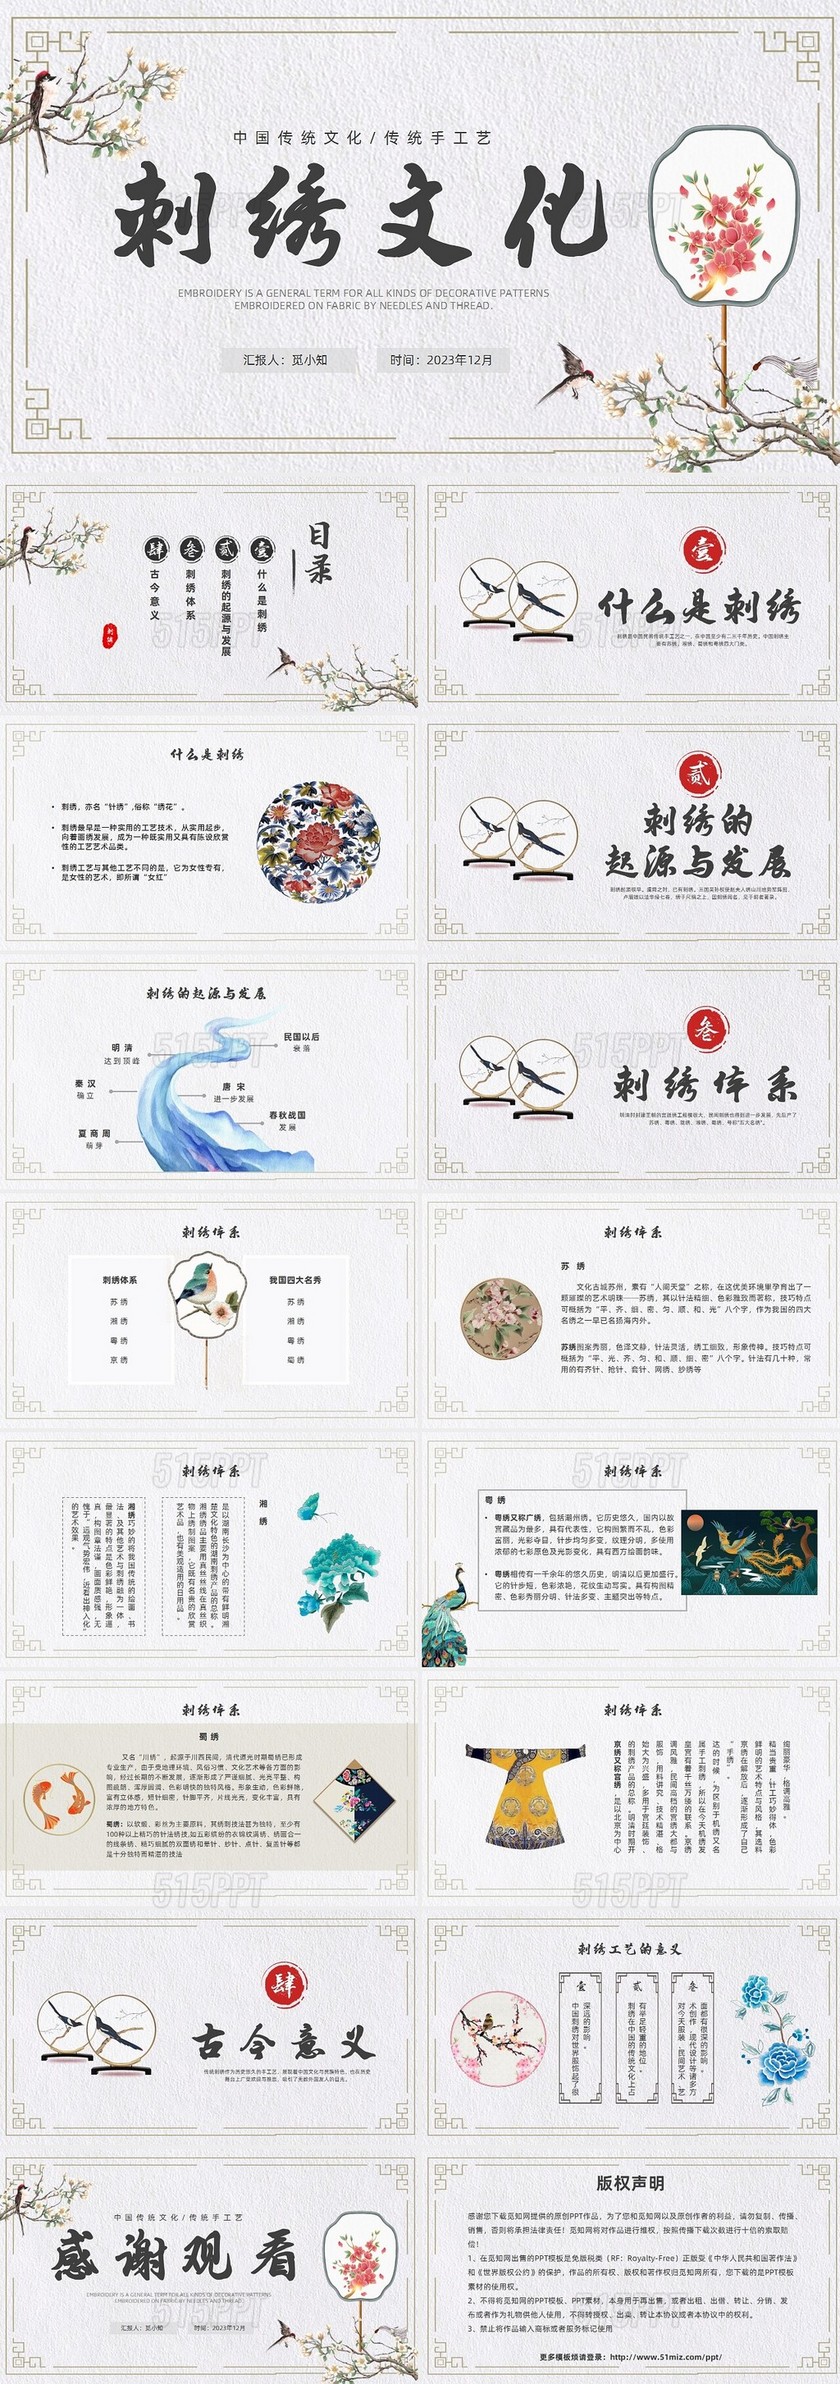 古风简约风格刺绣文化PPT中国传统文化